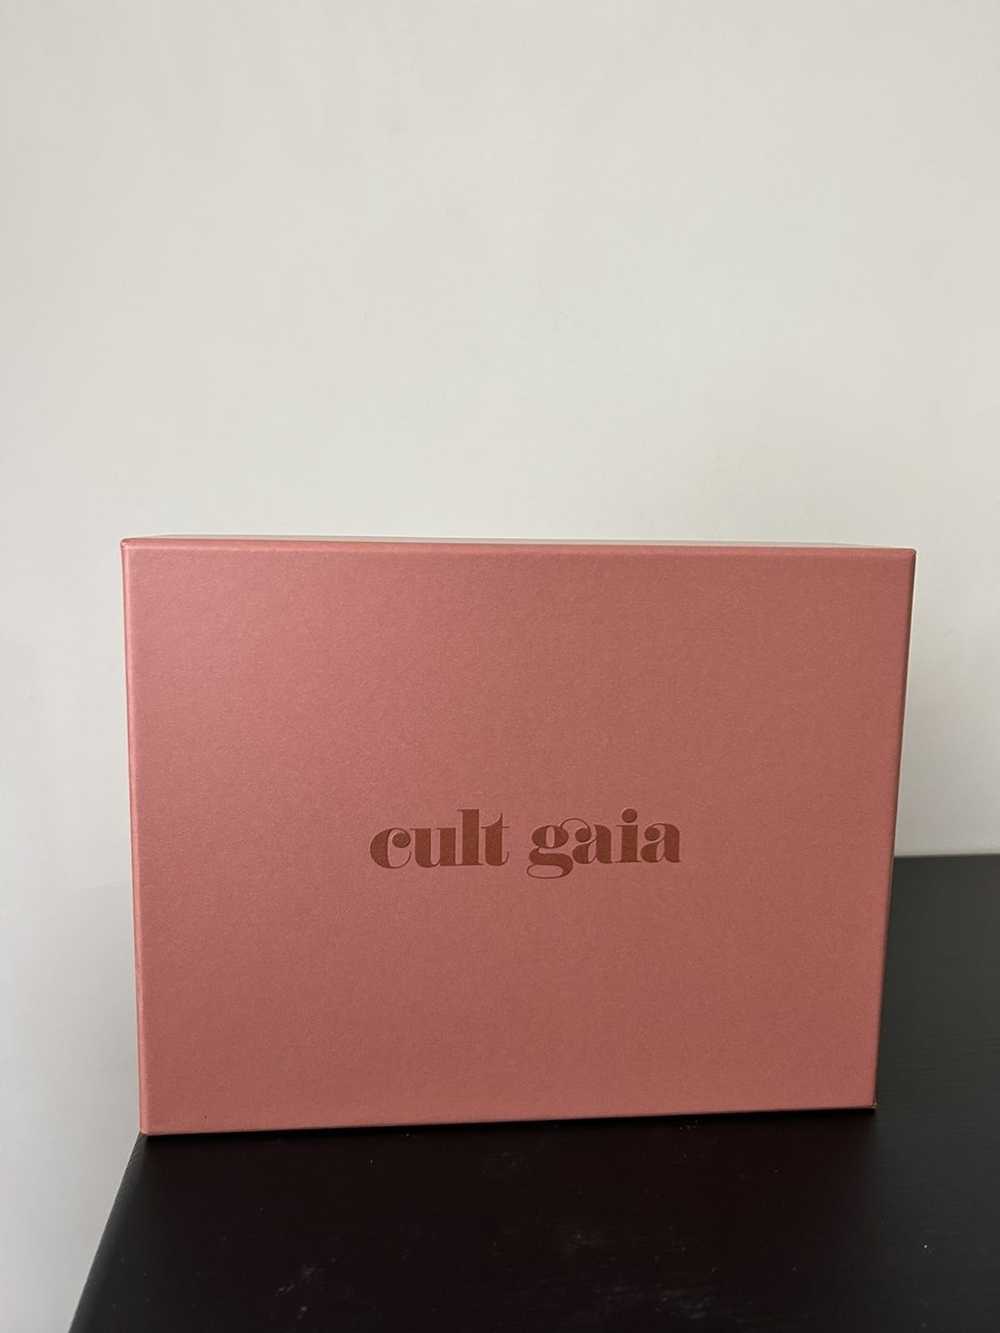 Cult Gaia Cult Gaia Gift Box - image 1